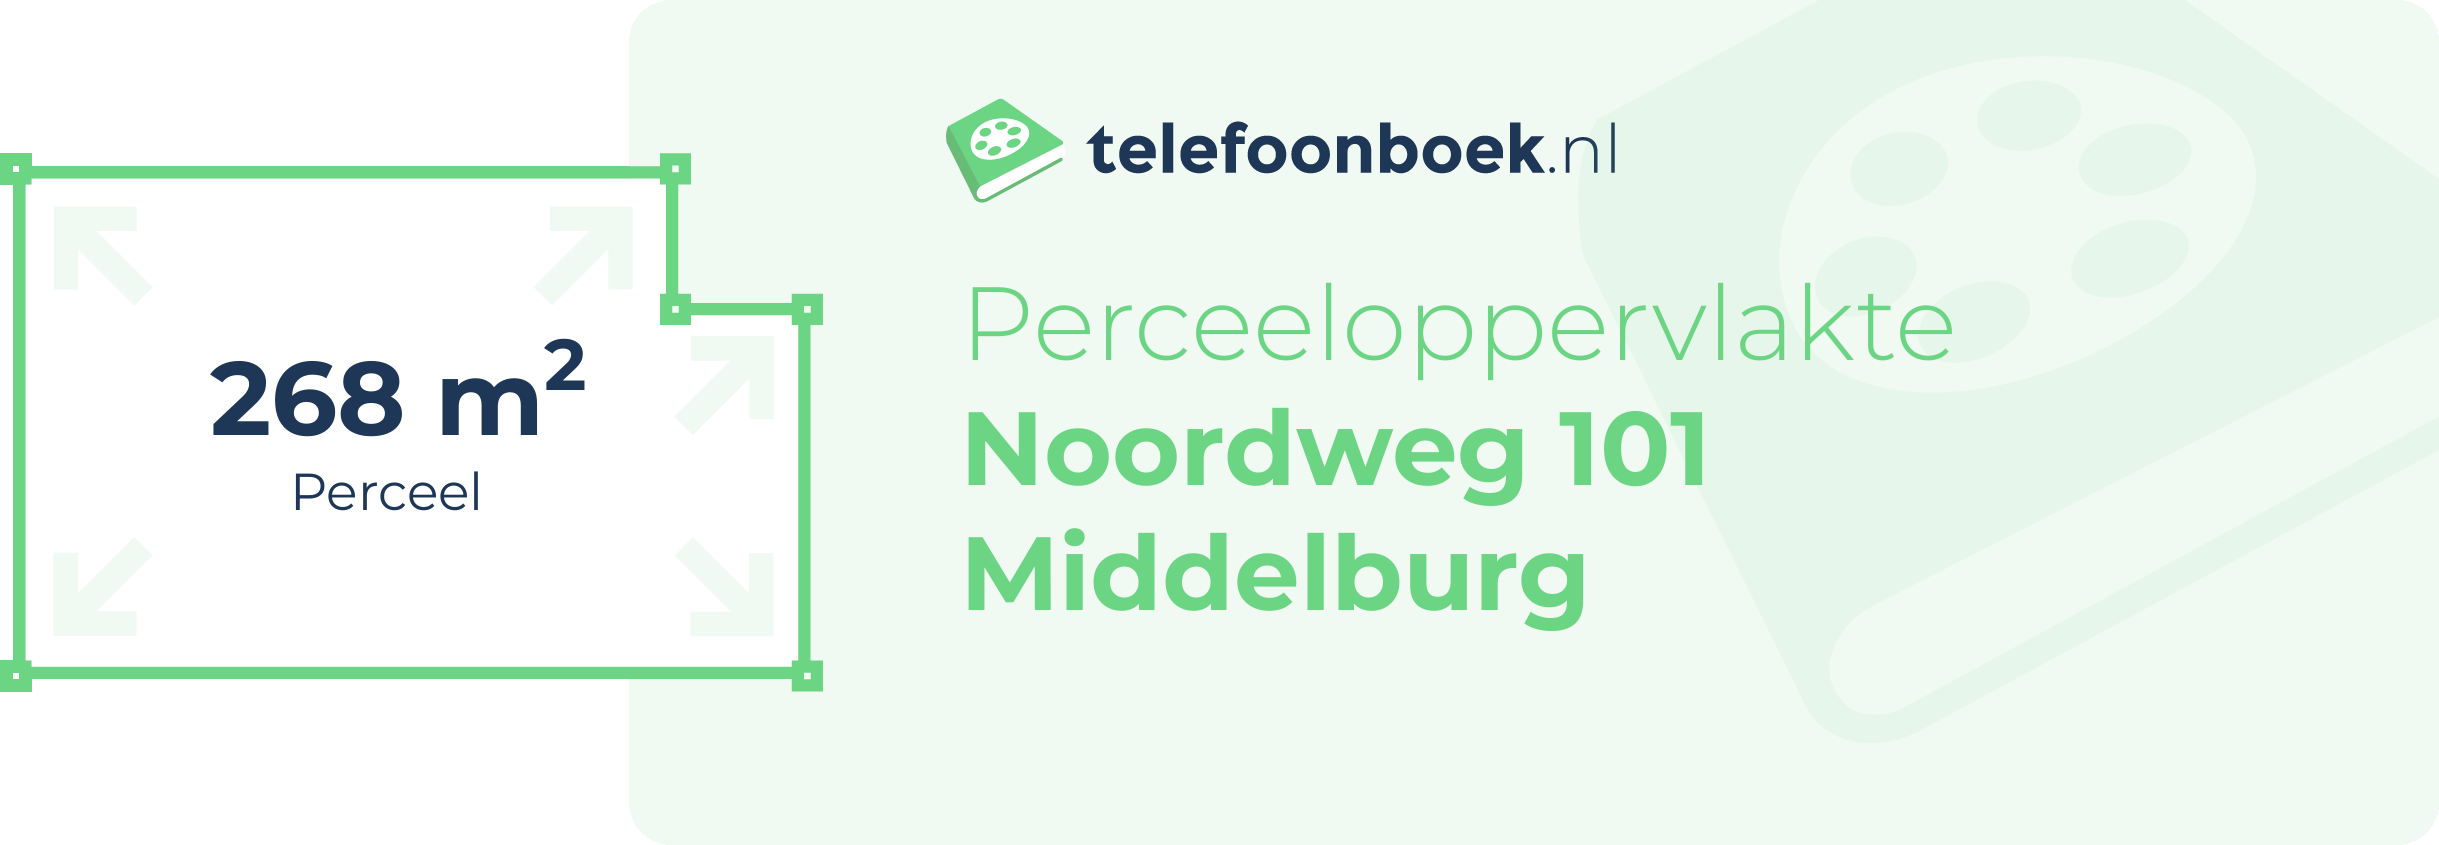 Perceeloppervlakte Noordweg 101 Middelburg